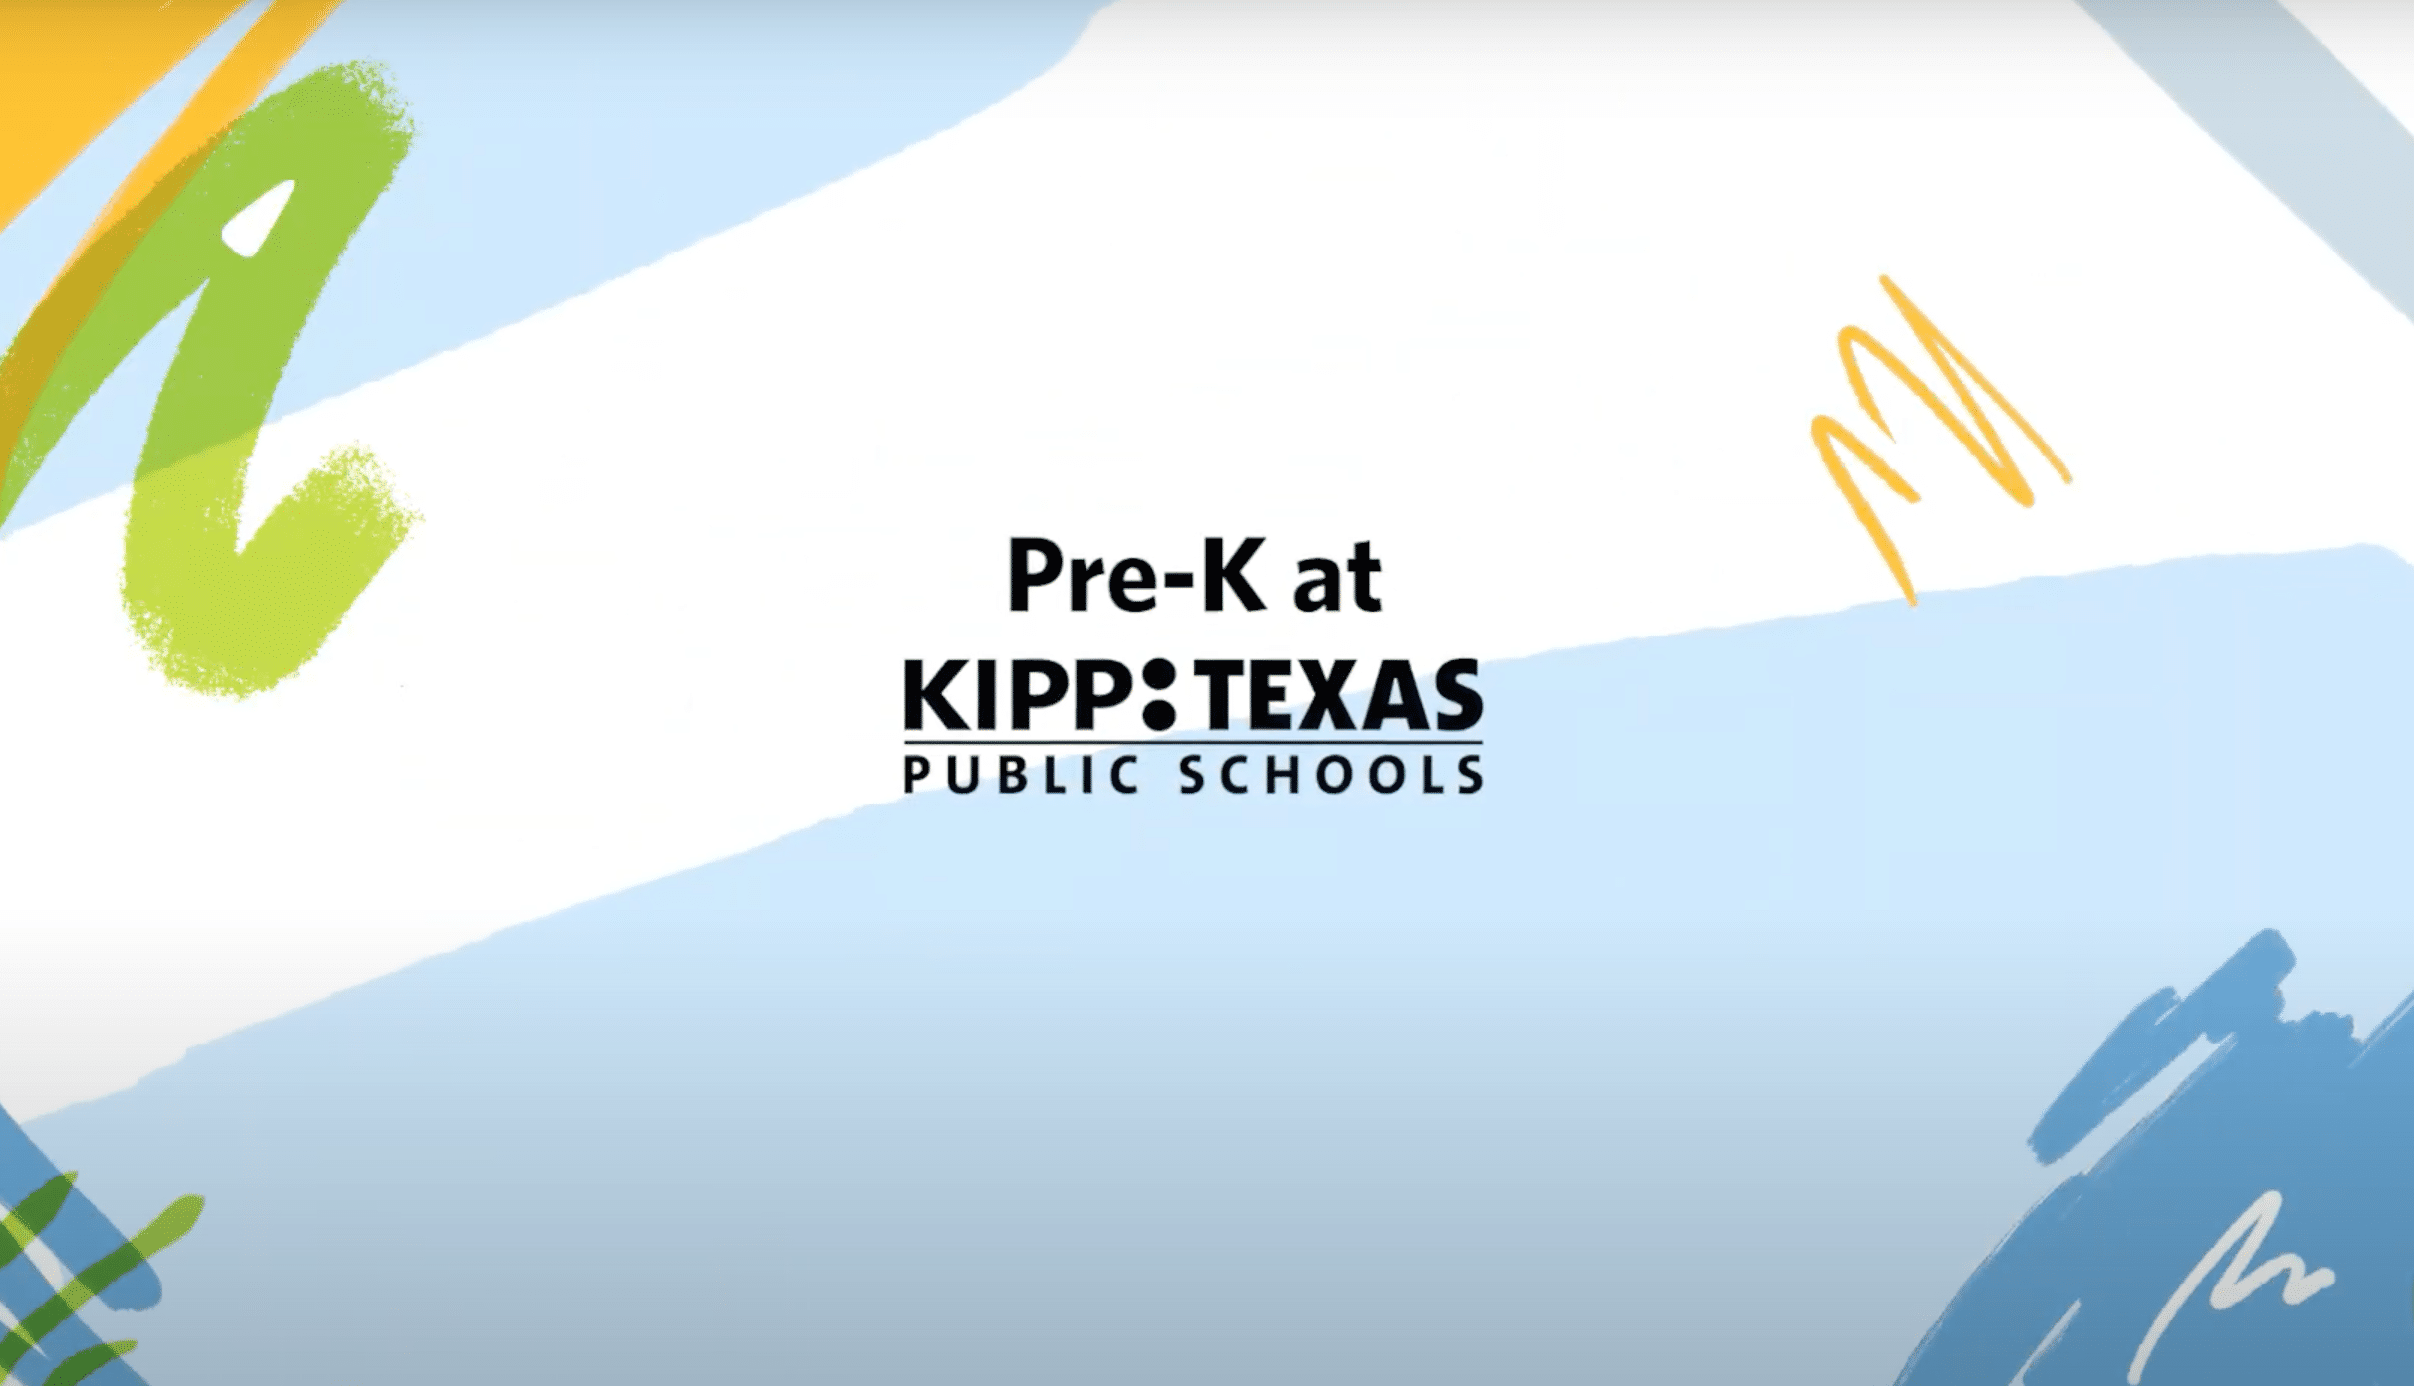 Pre-K at KIPP: Texas public schools